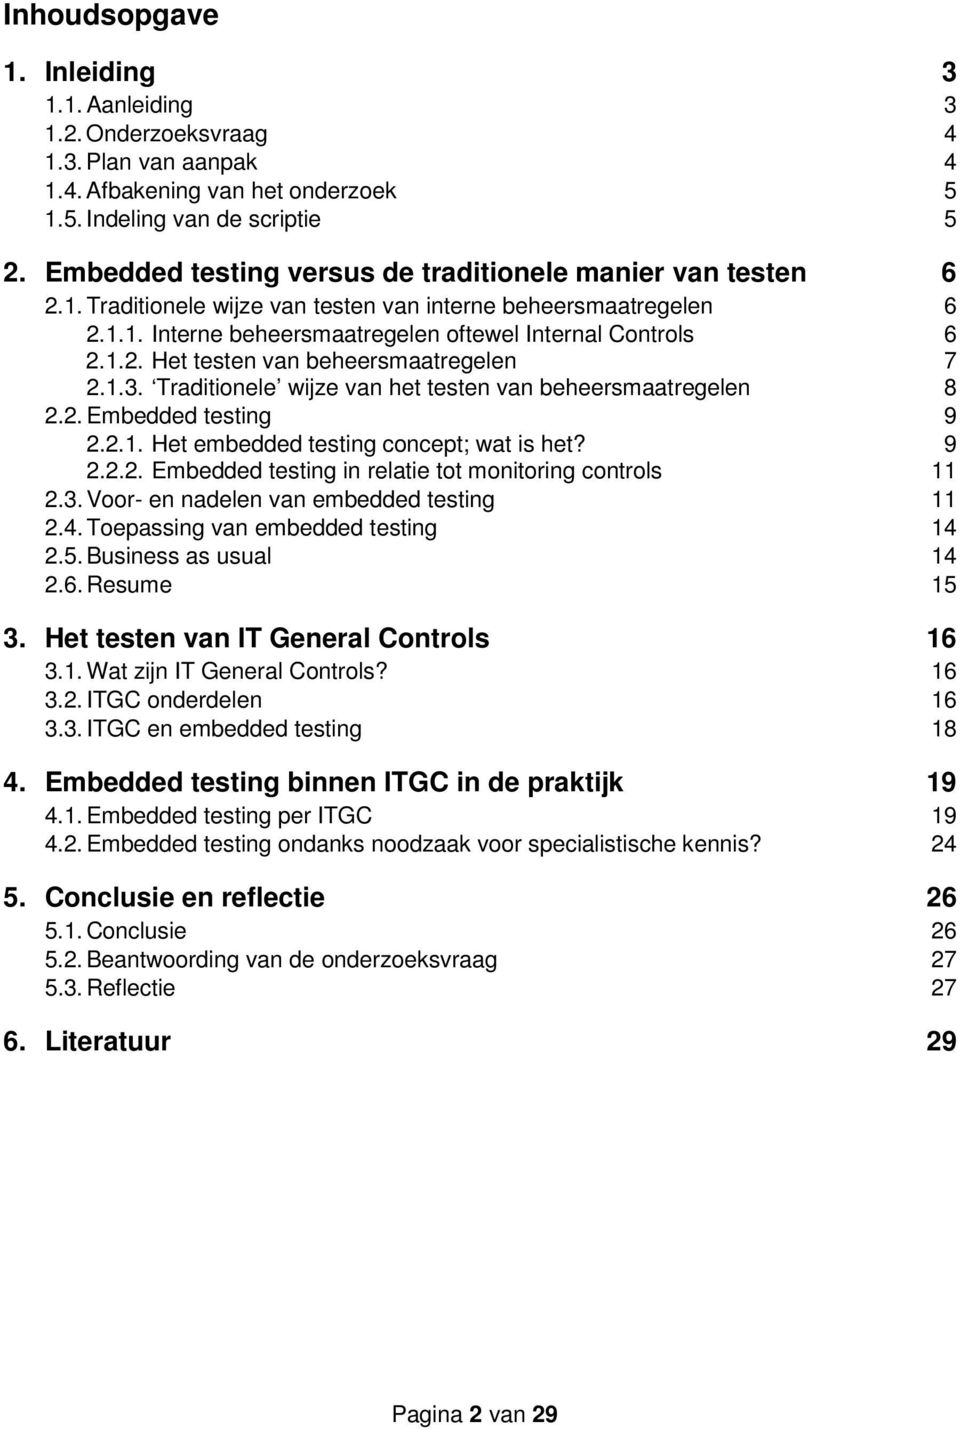 1.3. Traditionele wijze van het testen van beheersmaatregelen 8 2.2. Embedded testing 9 2.2.1. Het embedded testing concept; wat is het? 9 2.2.2. Embedded testing in relatie tot monitoring controls 11 2.